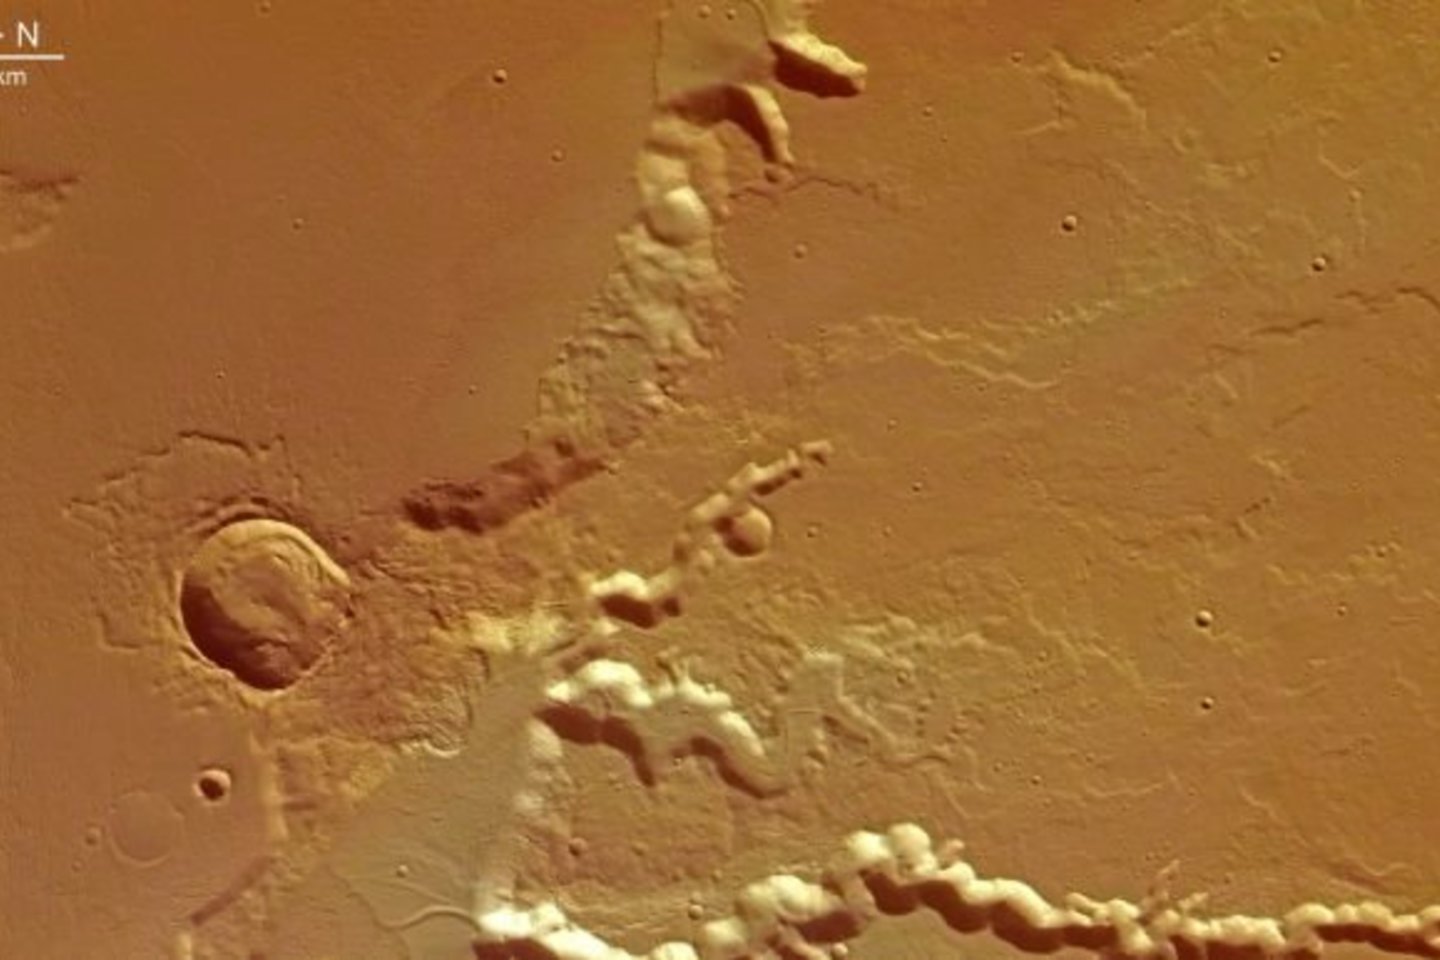 Medusae Fossae yra viena keisčiausių vietų Marse, kai kurie žmonės mano, kad šioje vietoje įmanoma rasti net ir sudužusių ateivių erdvėlaivių. <br>ESA nuotr. 